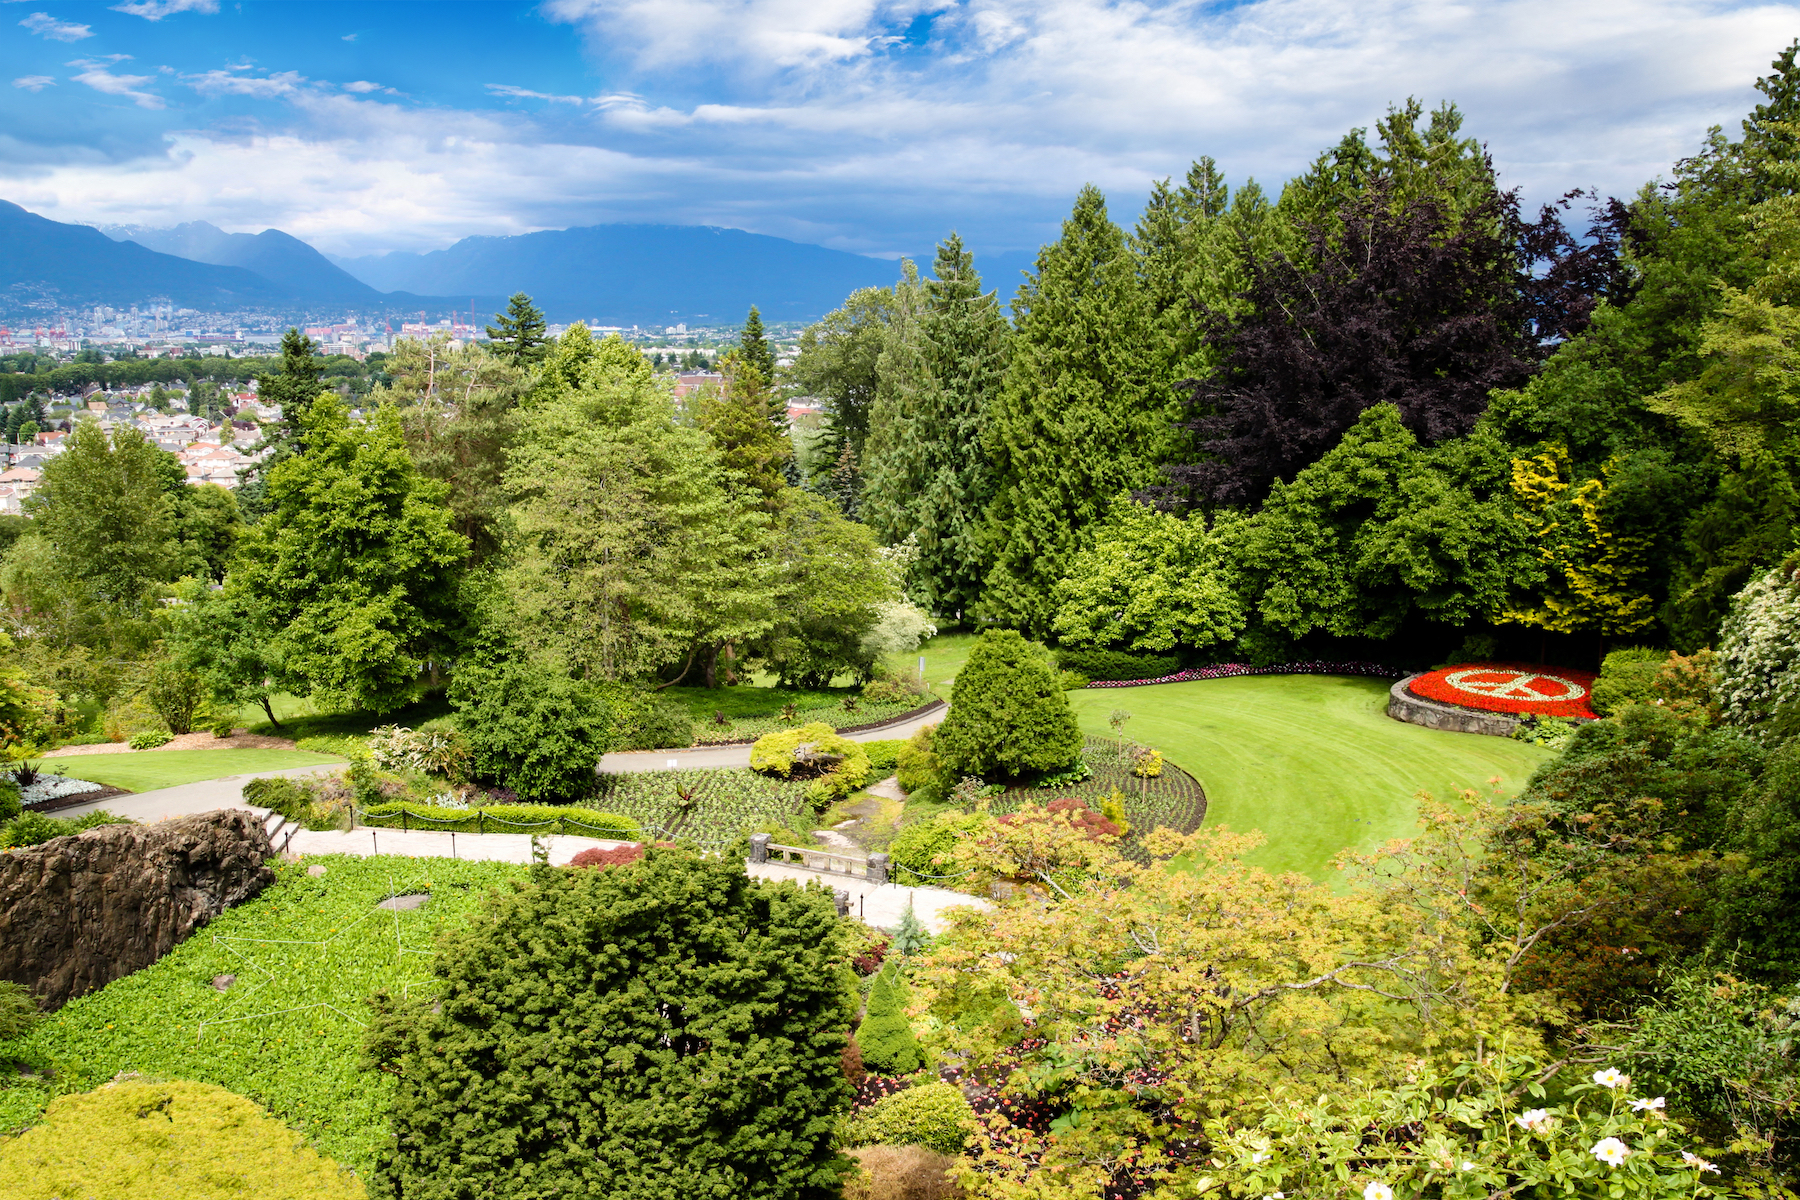 Los 5 mejores parques para experimentar en Vancouver, BC - 13